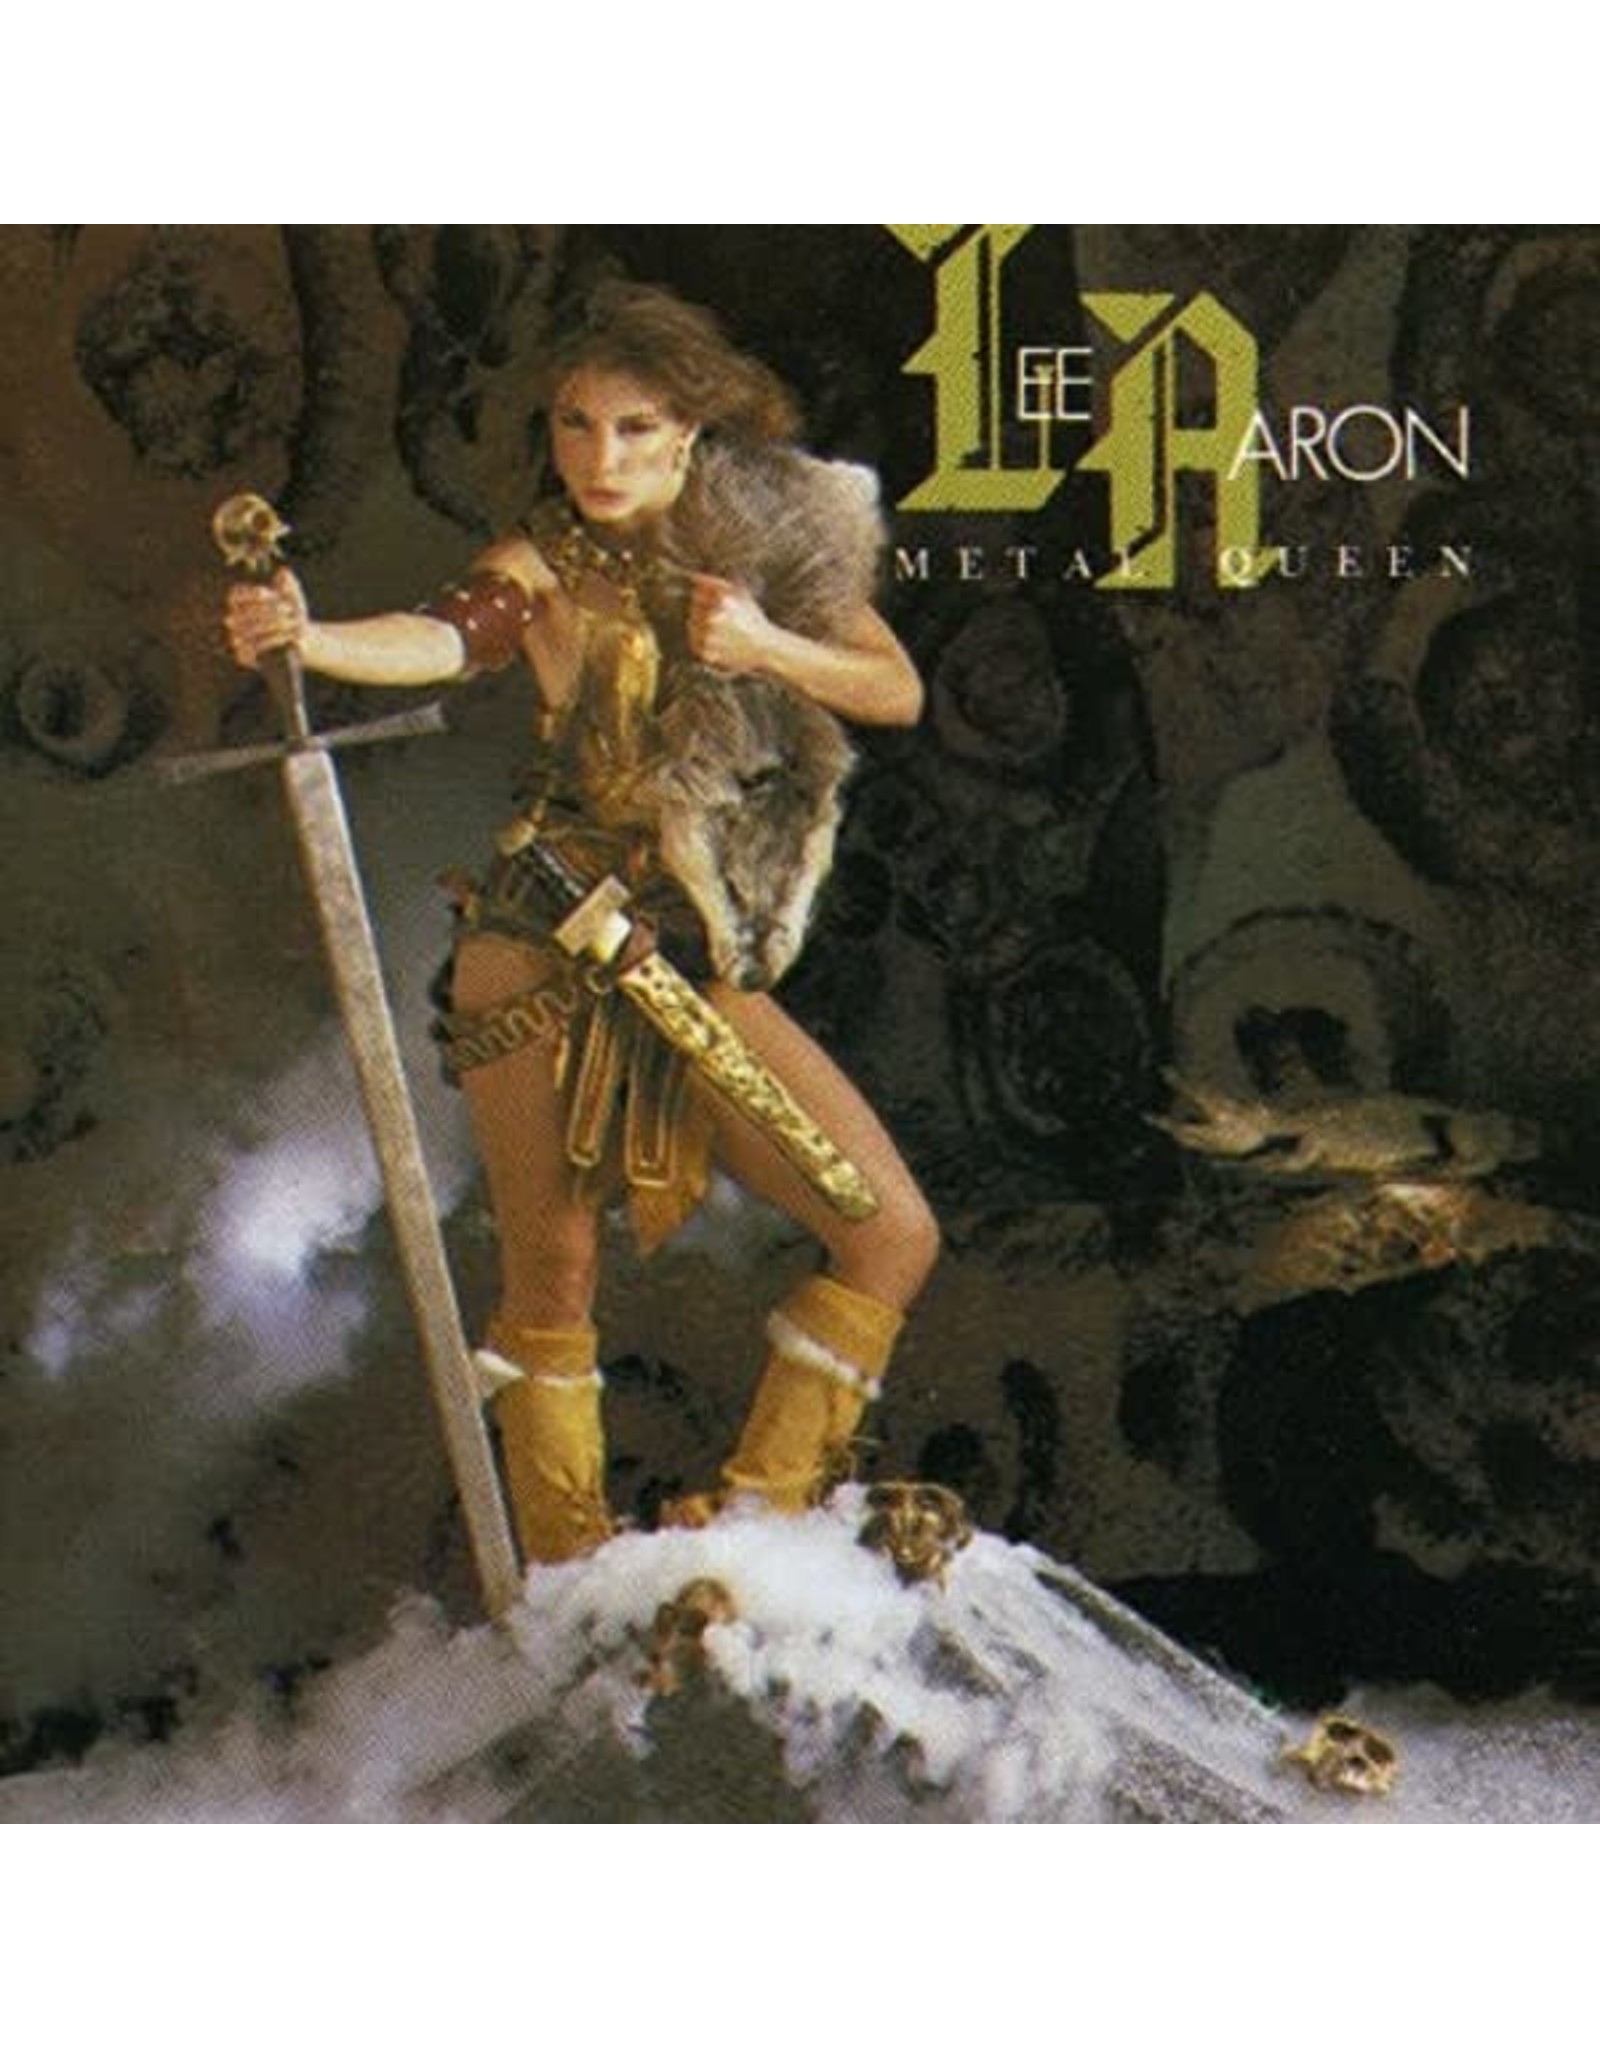 Lee Aaron - Metal Queen (Exclusive Pink Vinyl]